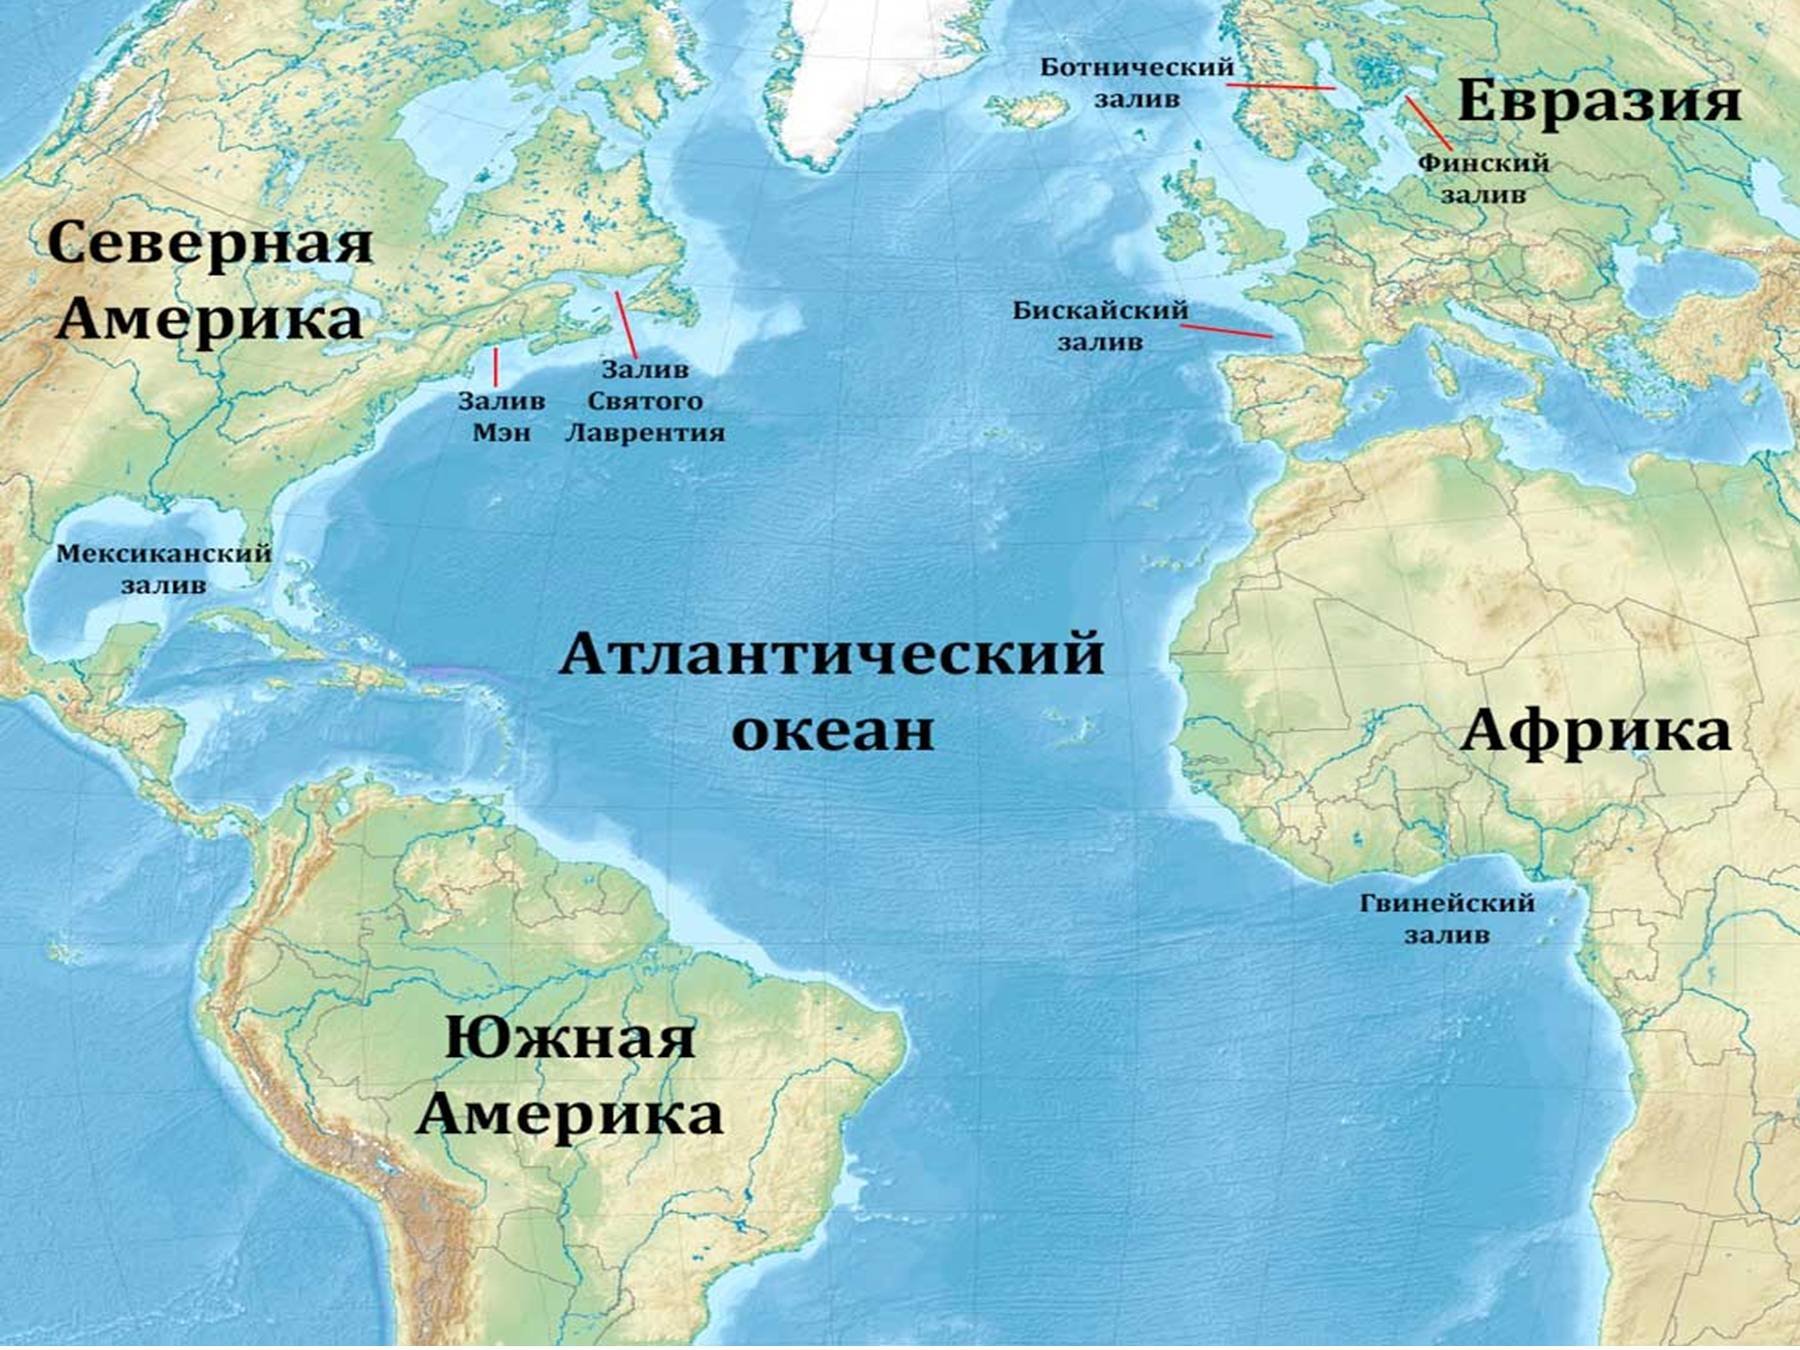 Атлантический океан форма. Расположение Атлантического океана на карте. Карта Атлантического океана с морями заливами и проливами. Атлантический океан на карте. Атлантическийокеант на карт.